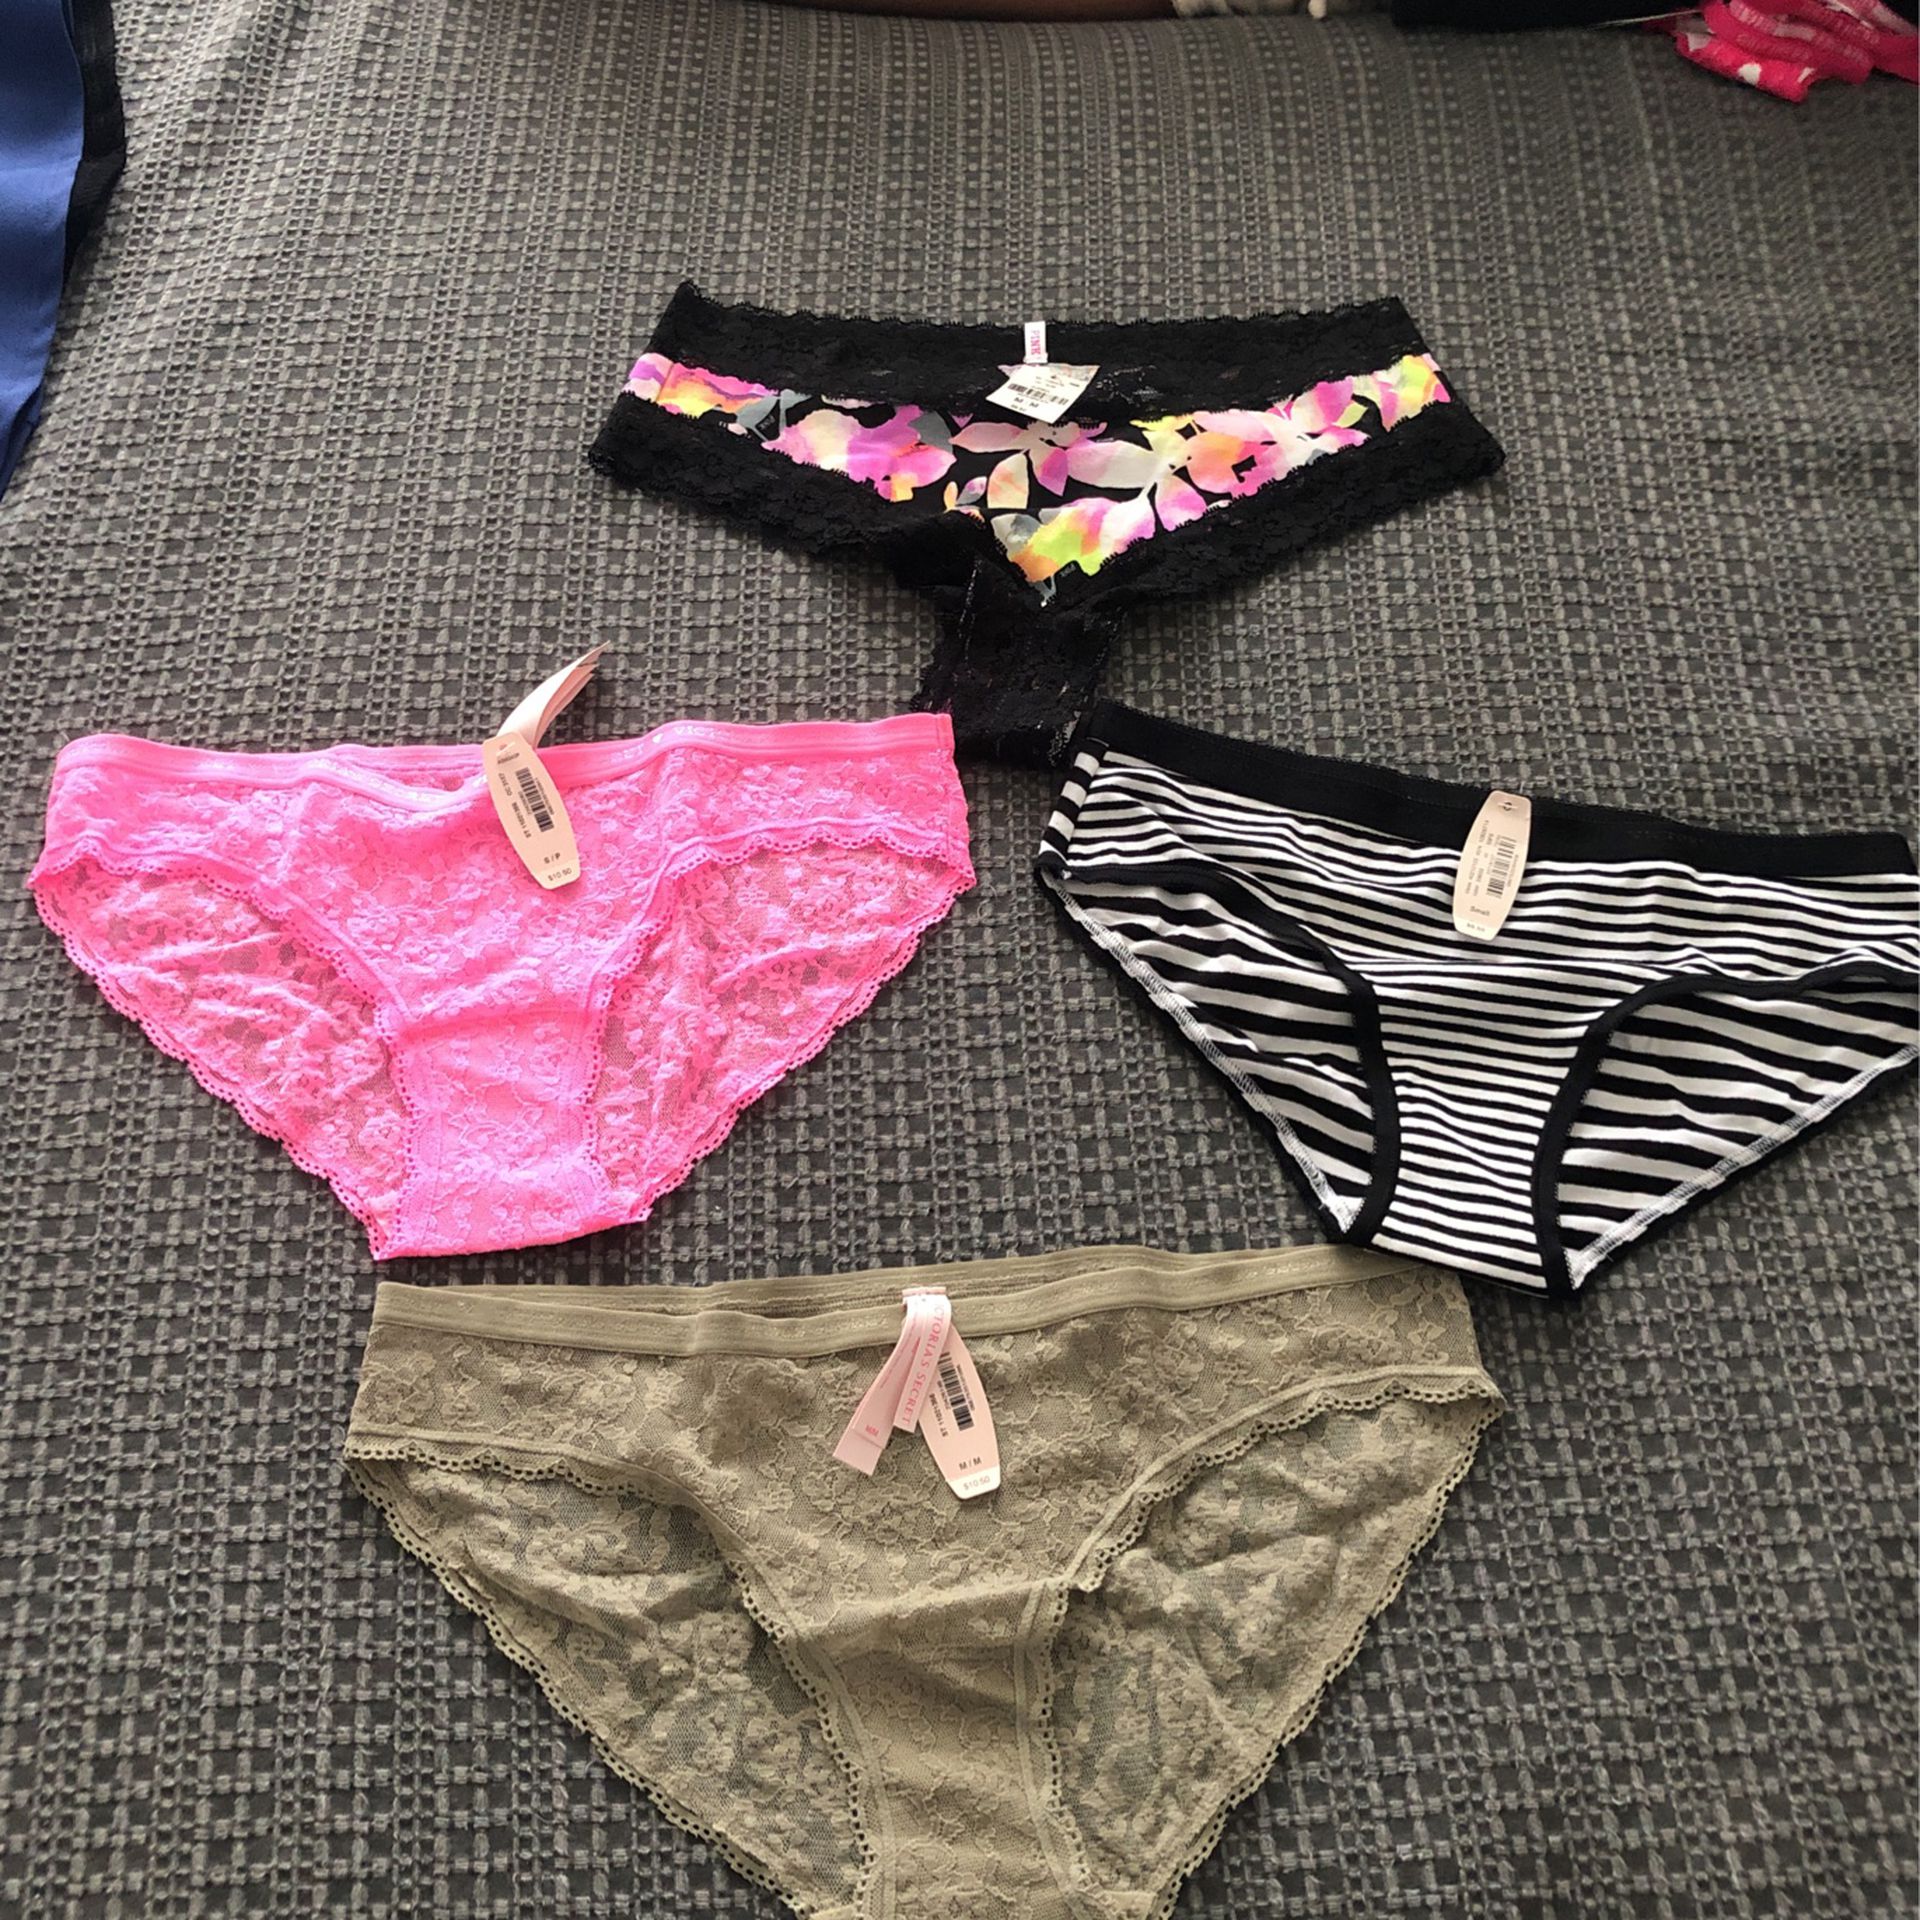 Victoria’s Secret underwear